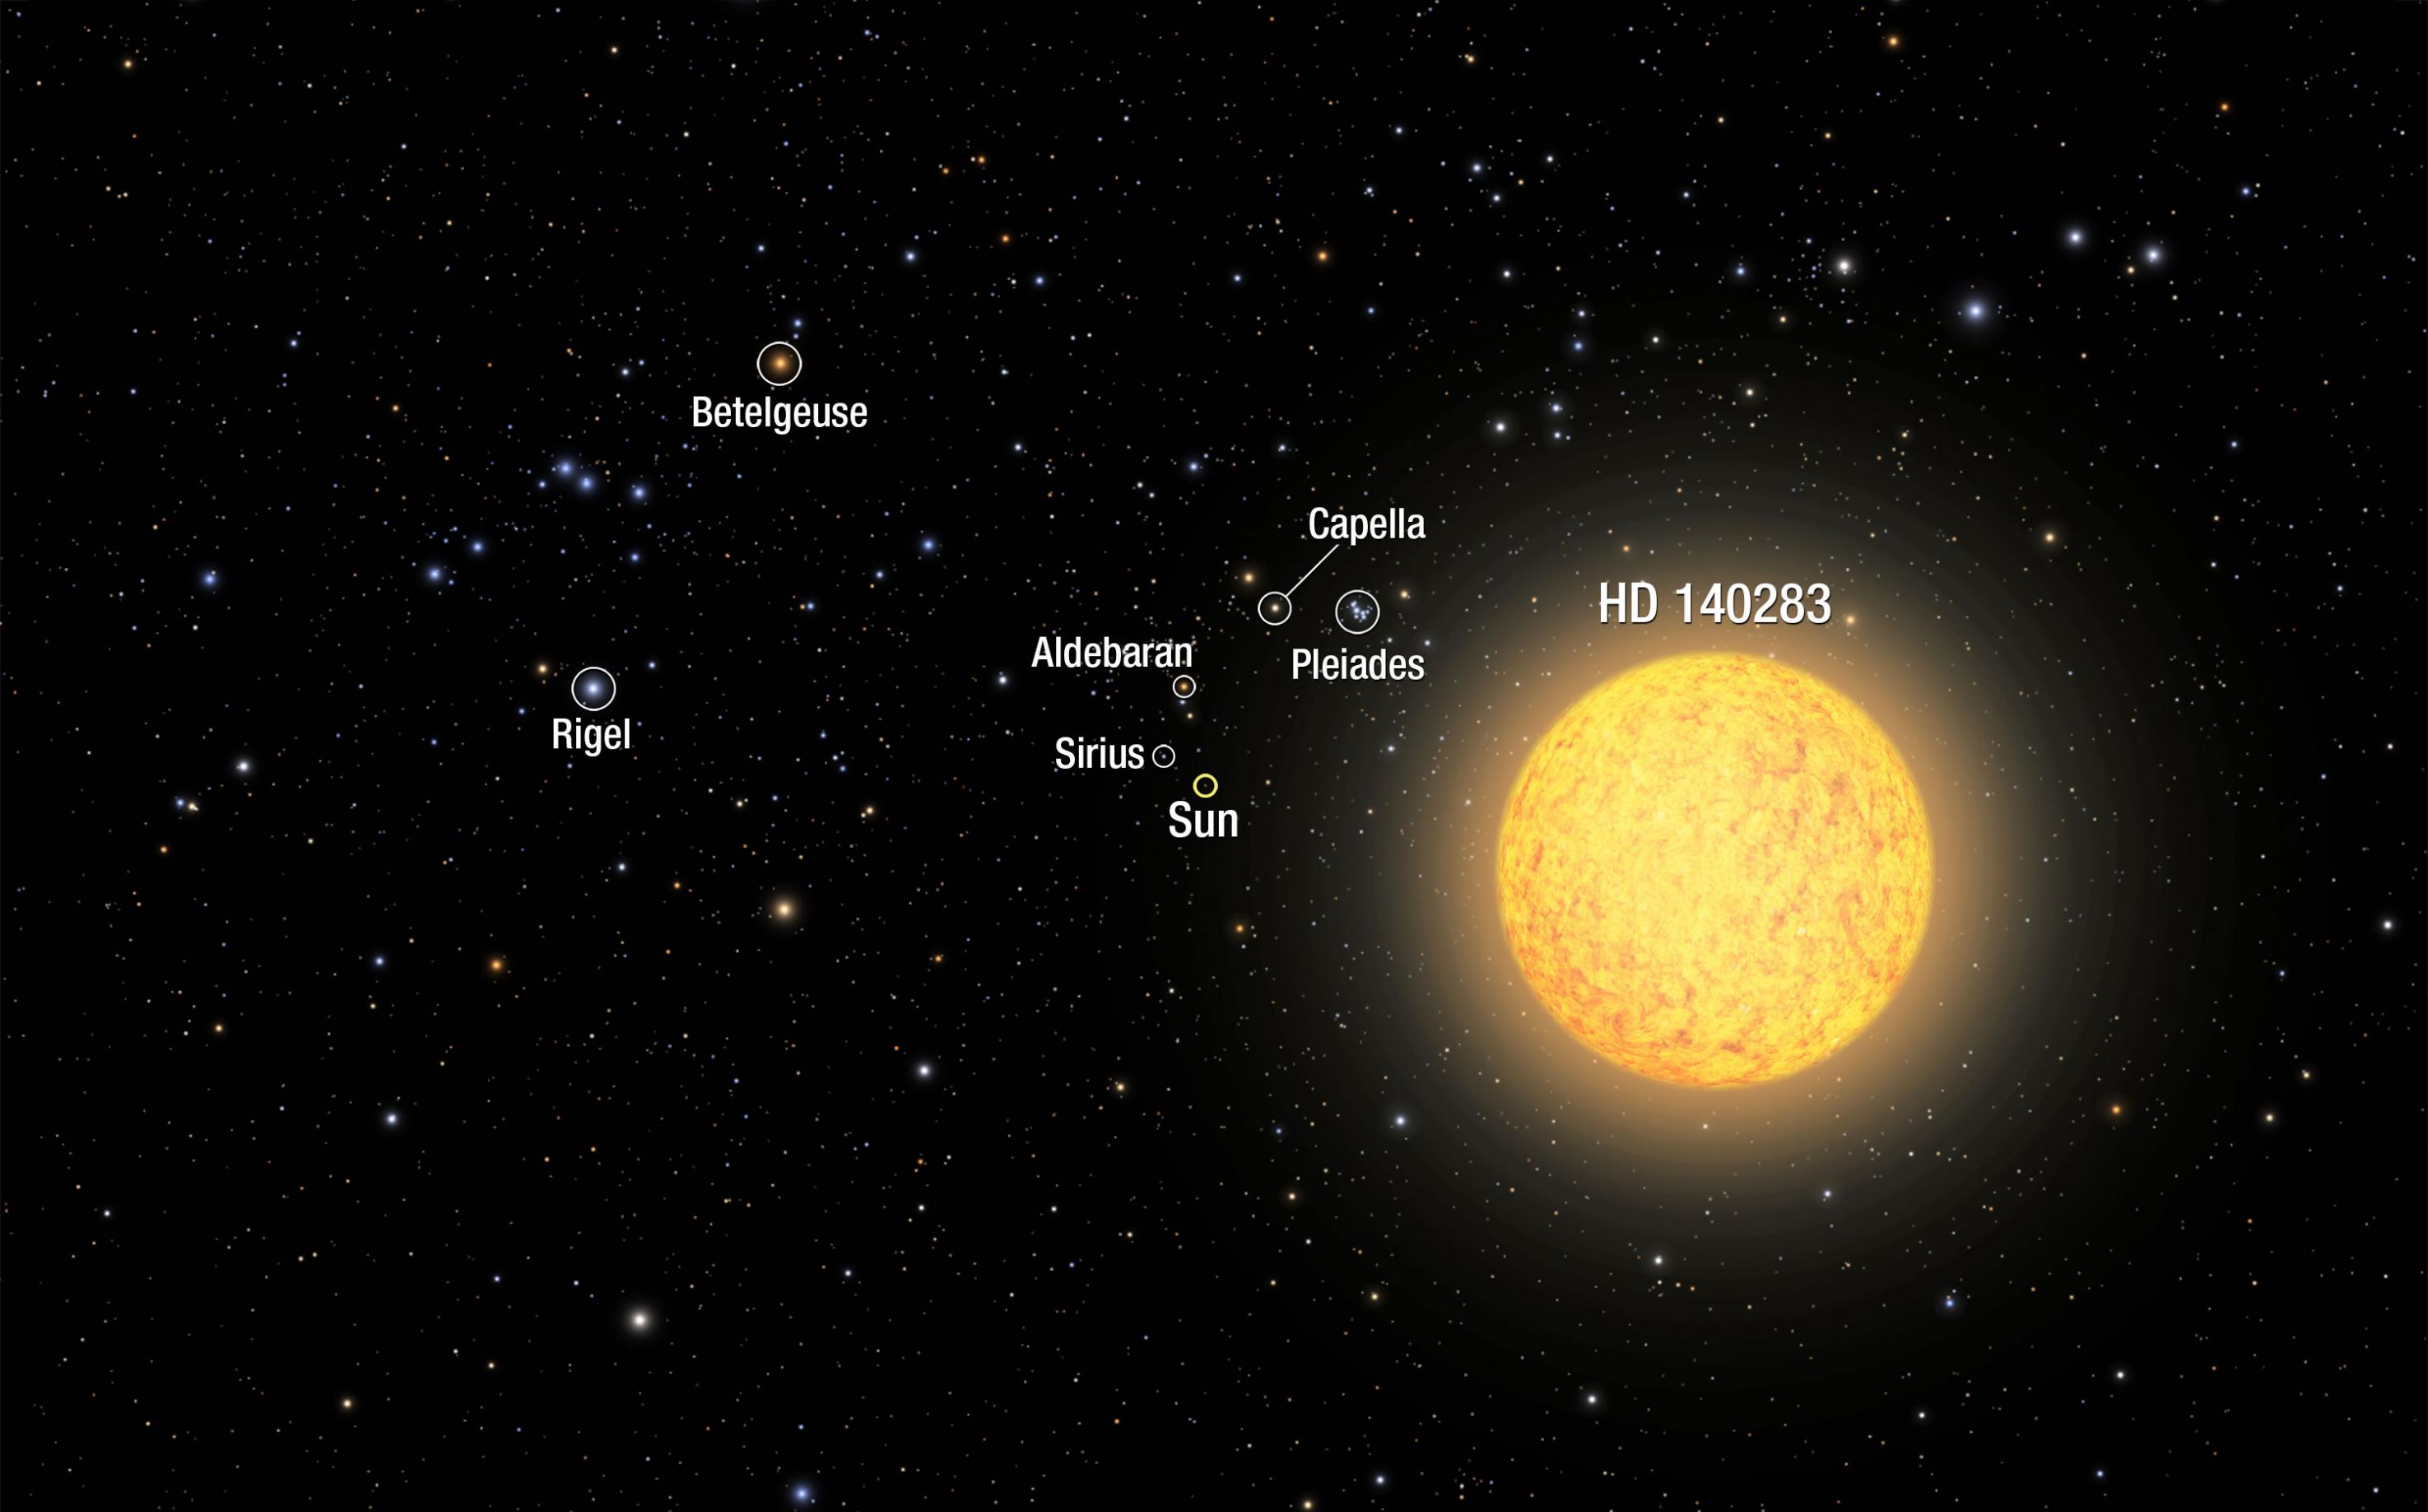 天文学家发现最古老恒星HD 140283的年龄为144.6亿岁 比宇宙还古老